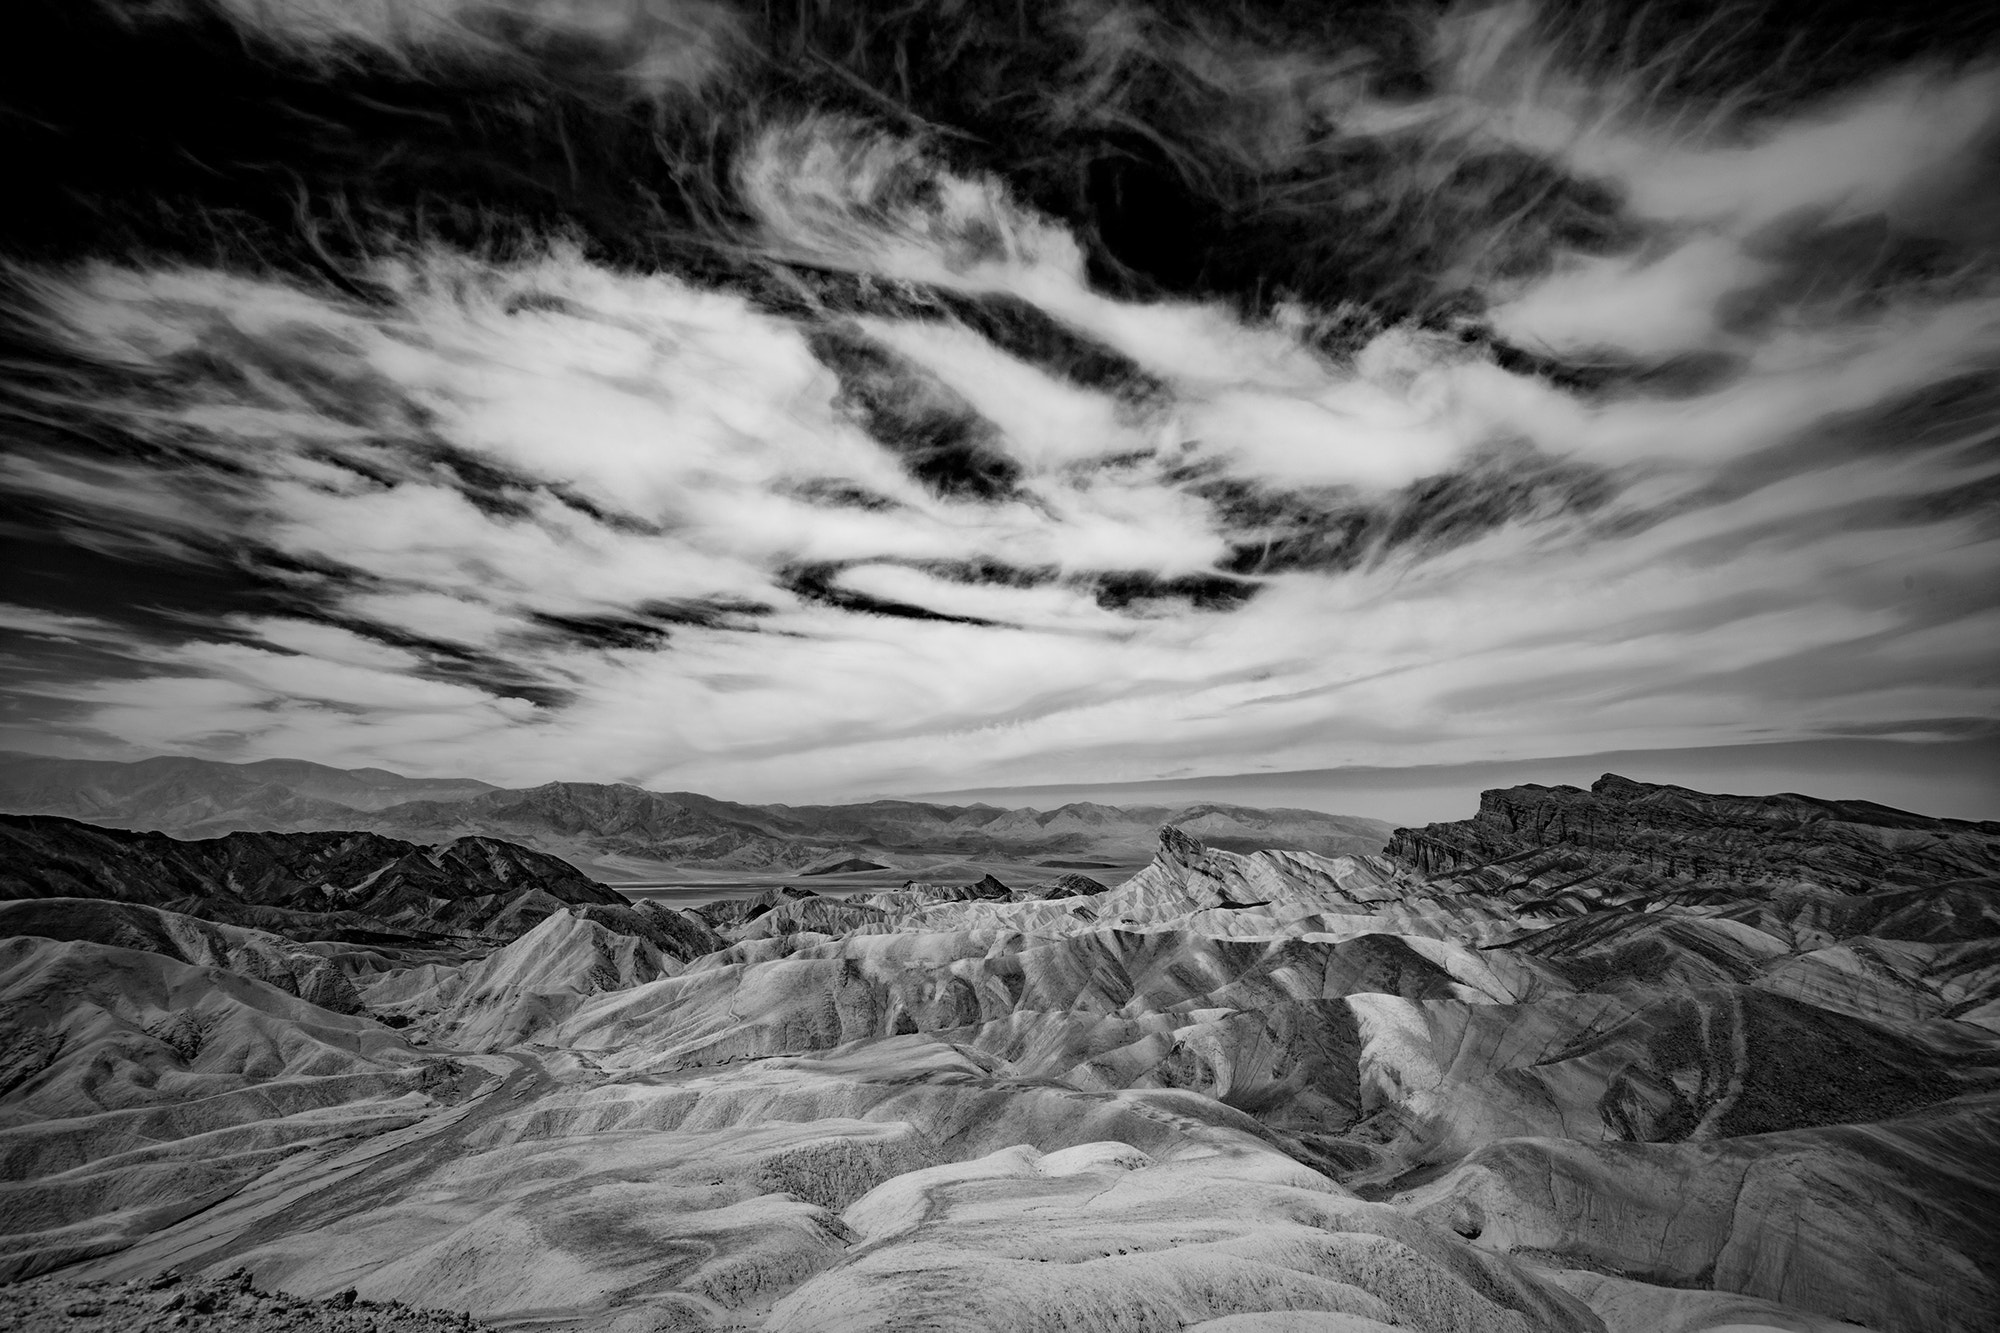 Sony a7 sample photo. Desert sky and terrain photography